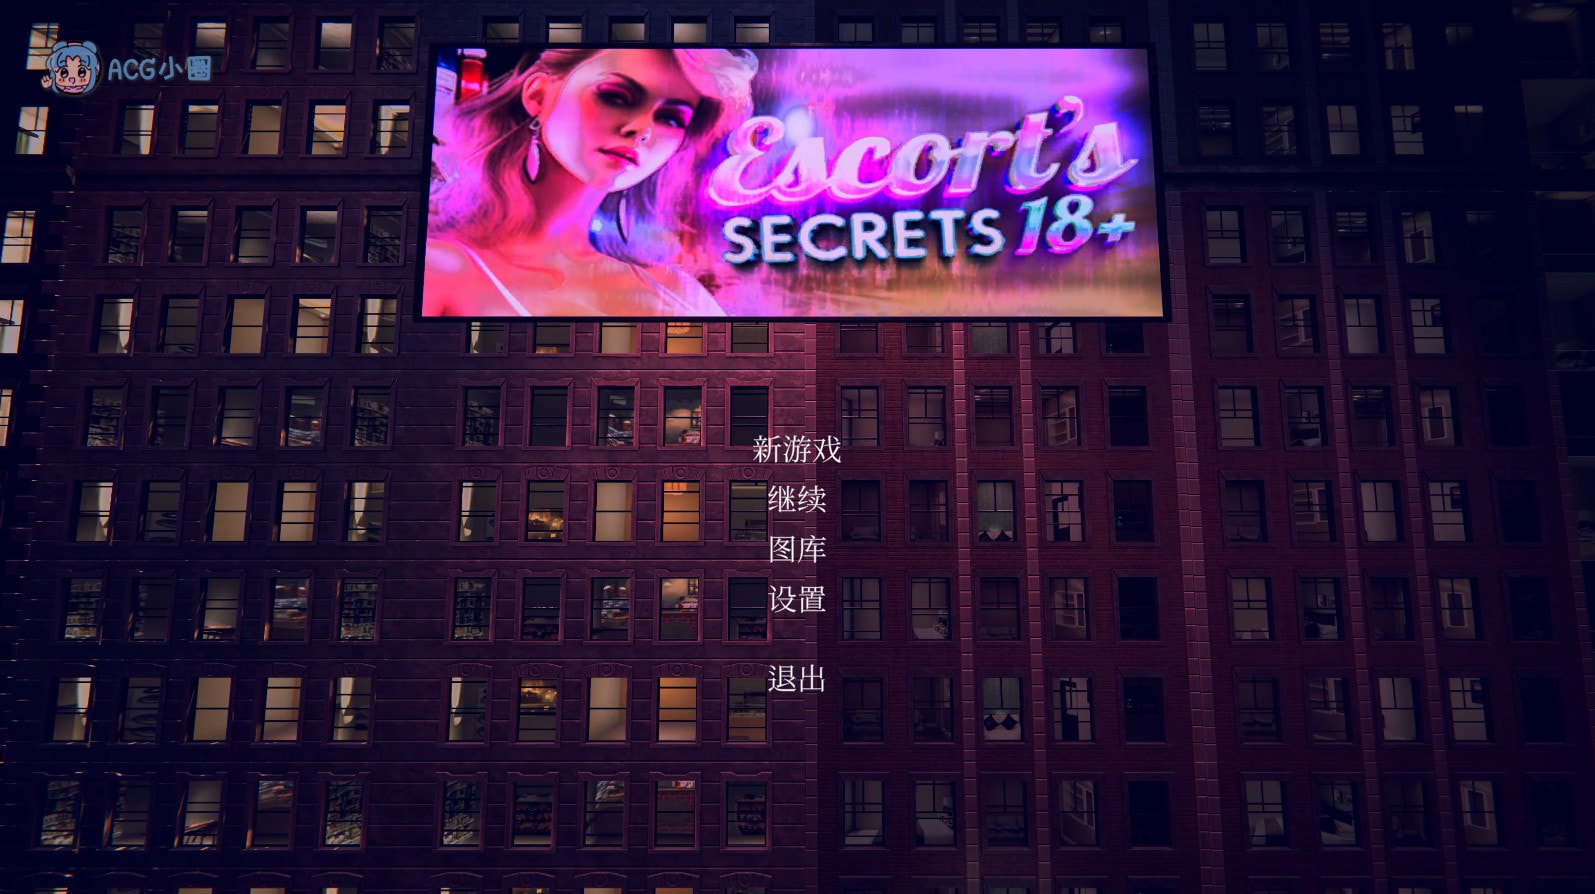 PC【欧美SLG/全动态】Escort's Secrets 18+ 官方中文版【3G】